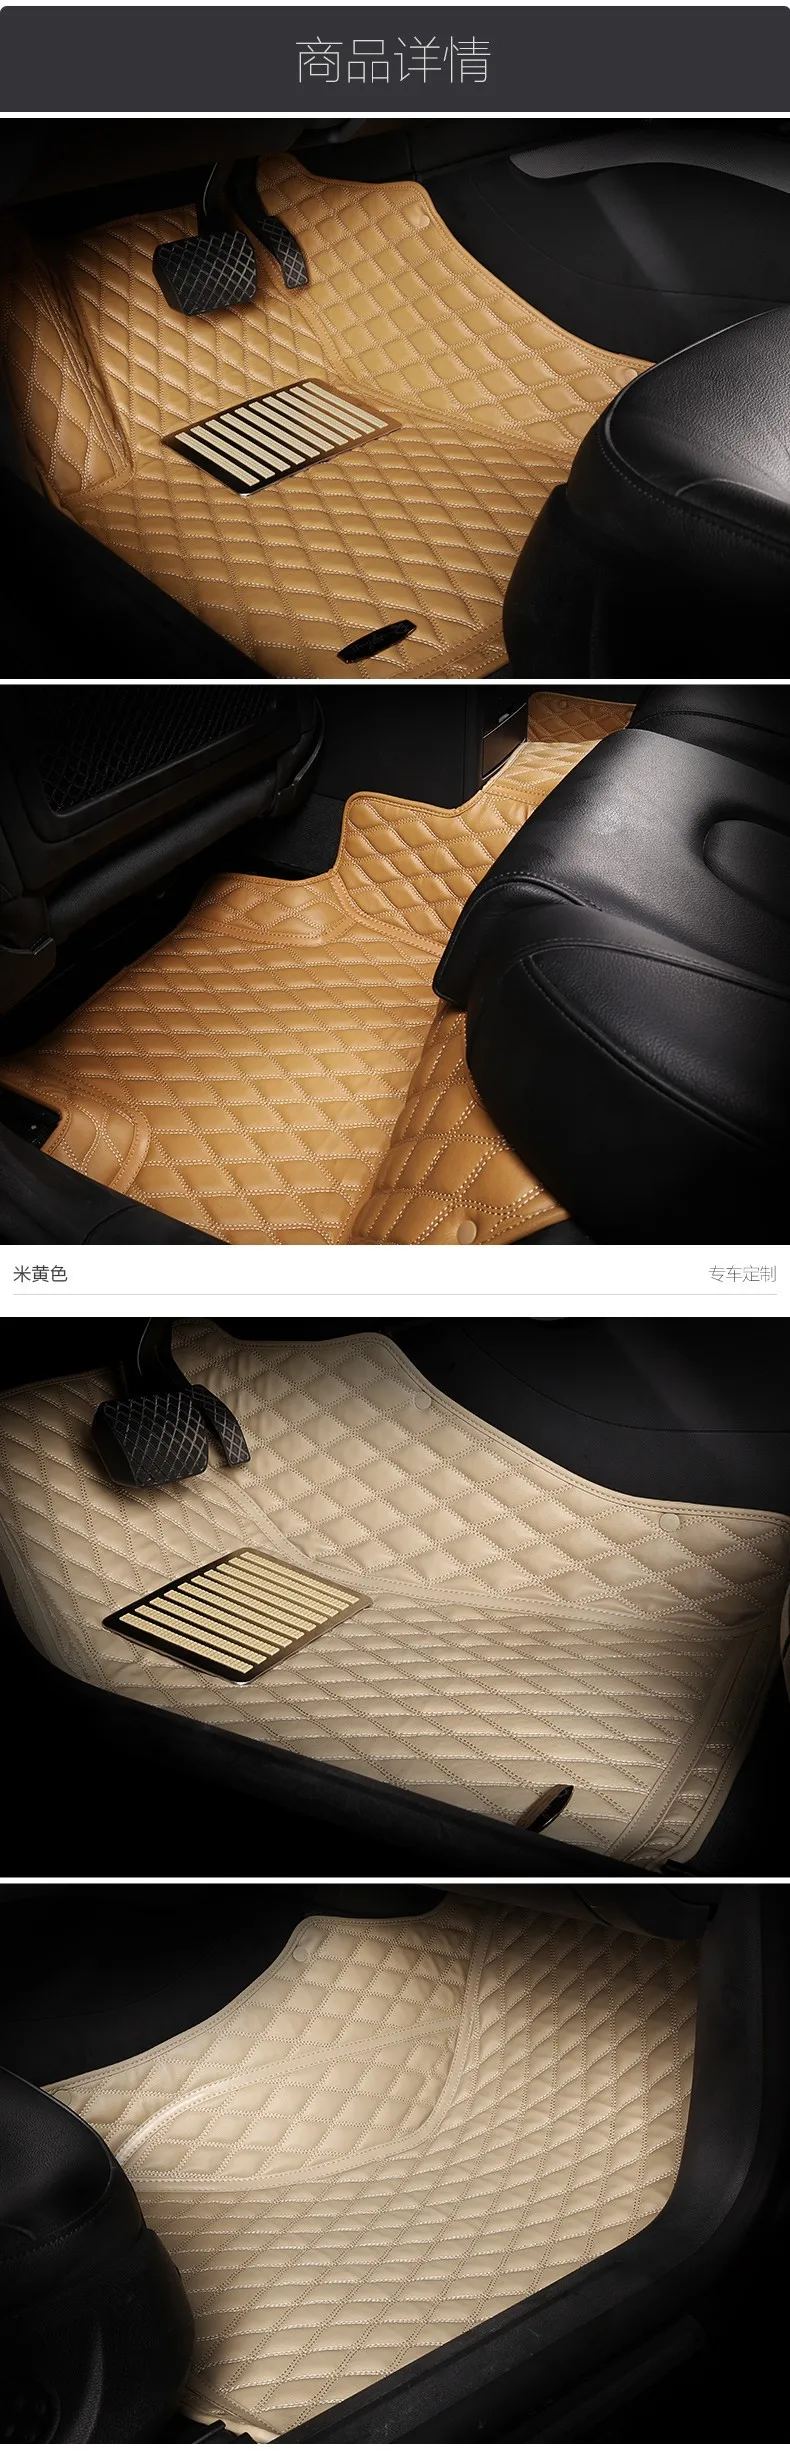 High品質フルセットカーペット車のマットの革カスタム3dの車のフロアマットnissan Fuga Buy カーペット車のマット 3d 車の フロアマット 車のマット日産フーガ Product On Alibaba Com